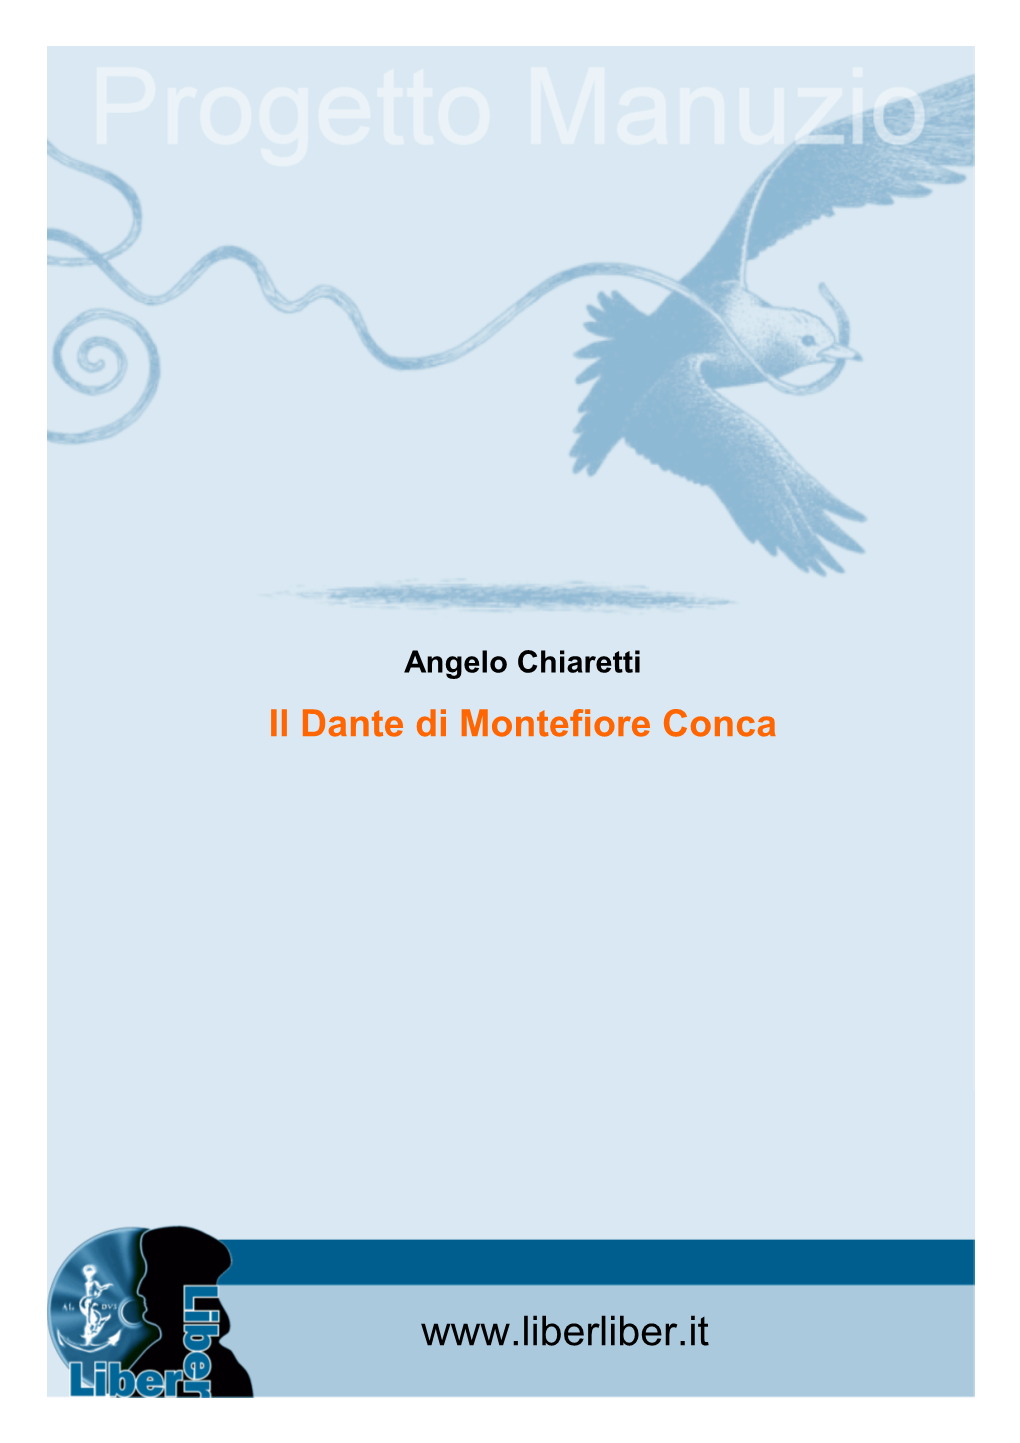 Dante Di Montefiore Conca